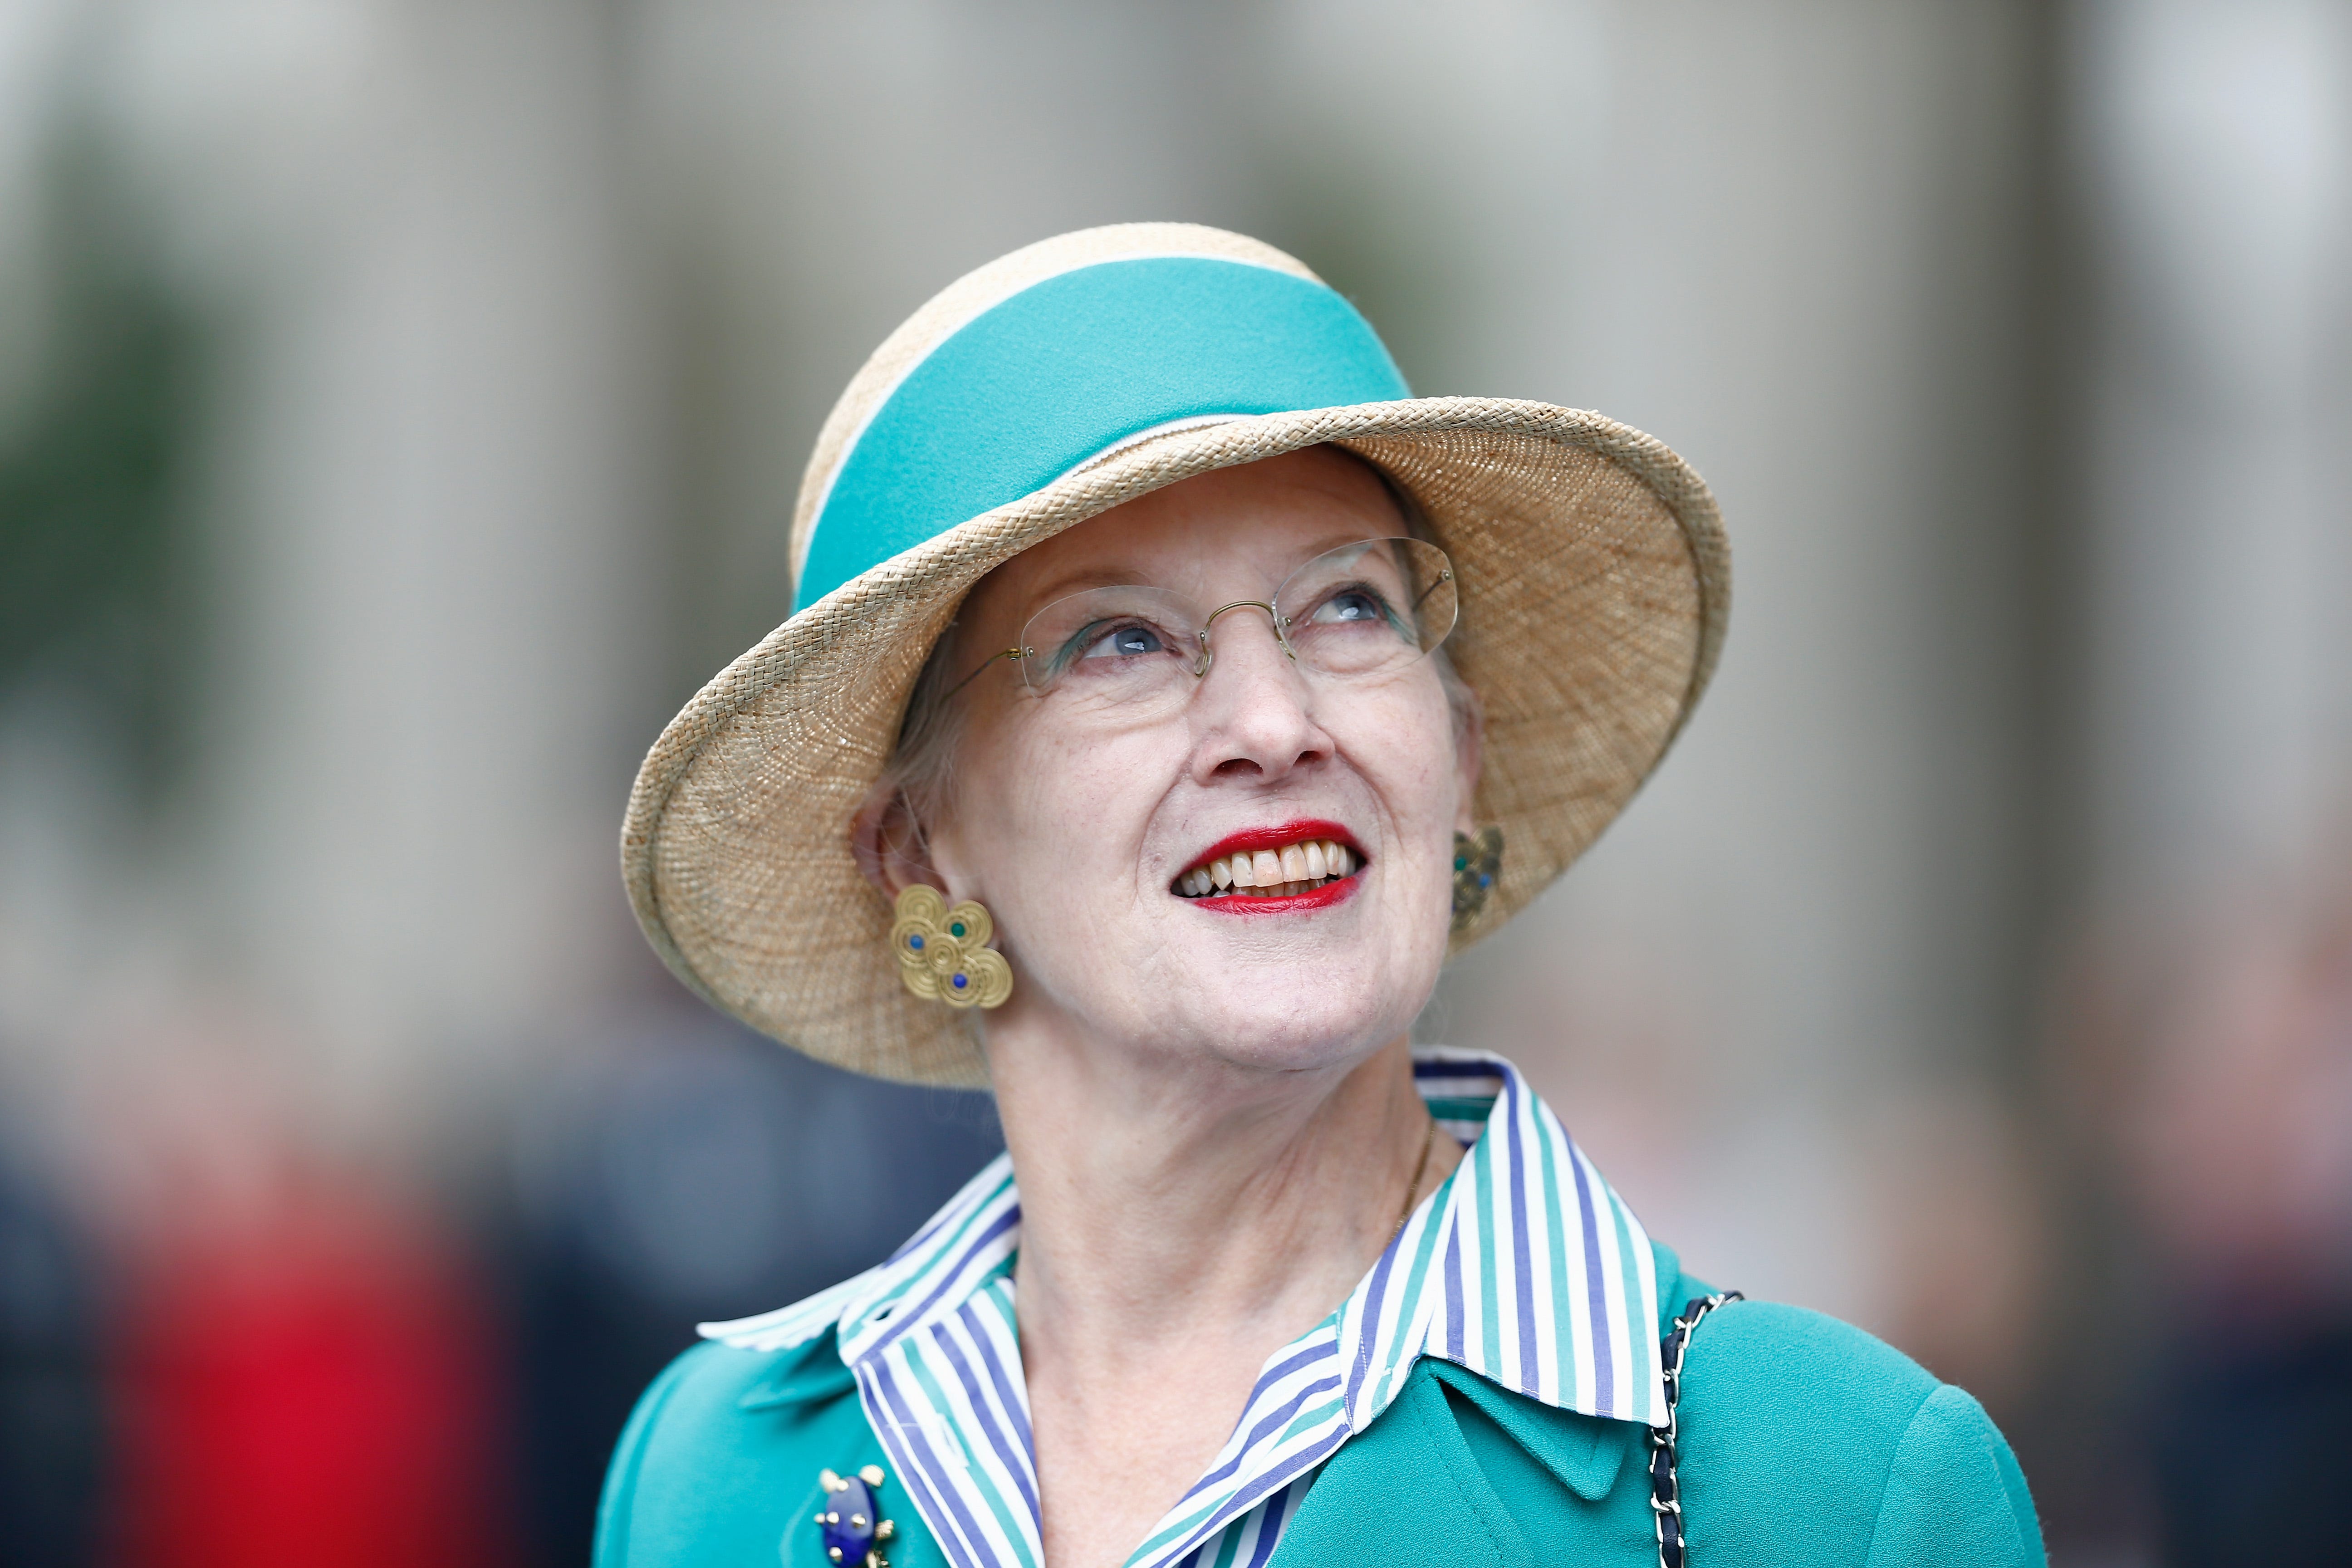 Königin Margrethe II. von Dänemark lächelt während eines Besuchs am Brandenburger Tor am 10. September 2014 in Berlin, Deutschland.  Königin Margrethe ist zu einem zweitägigen Besuch in Berlin.